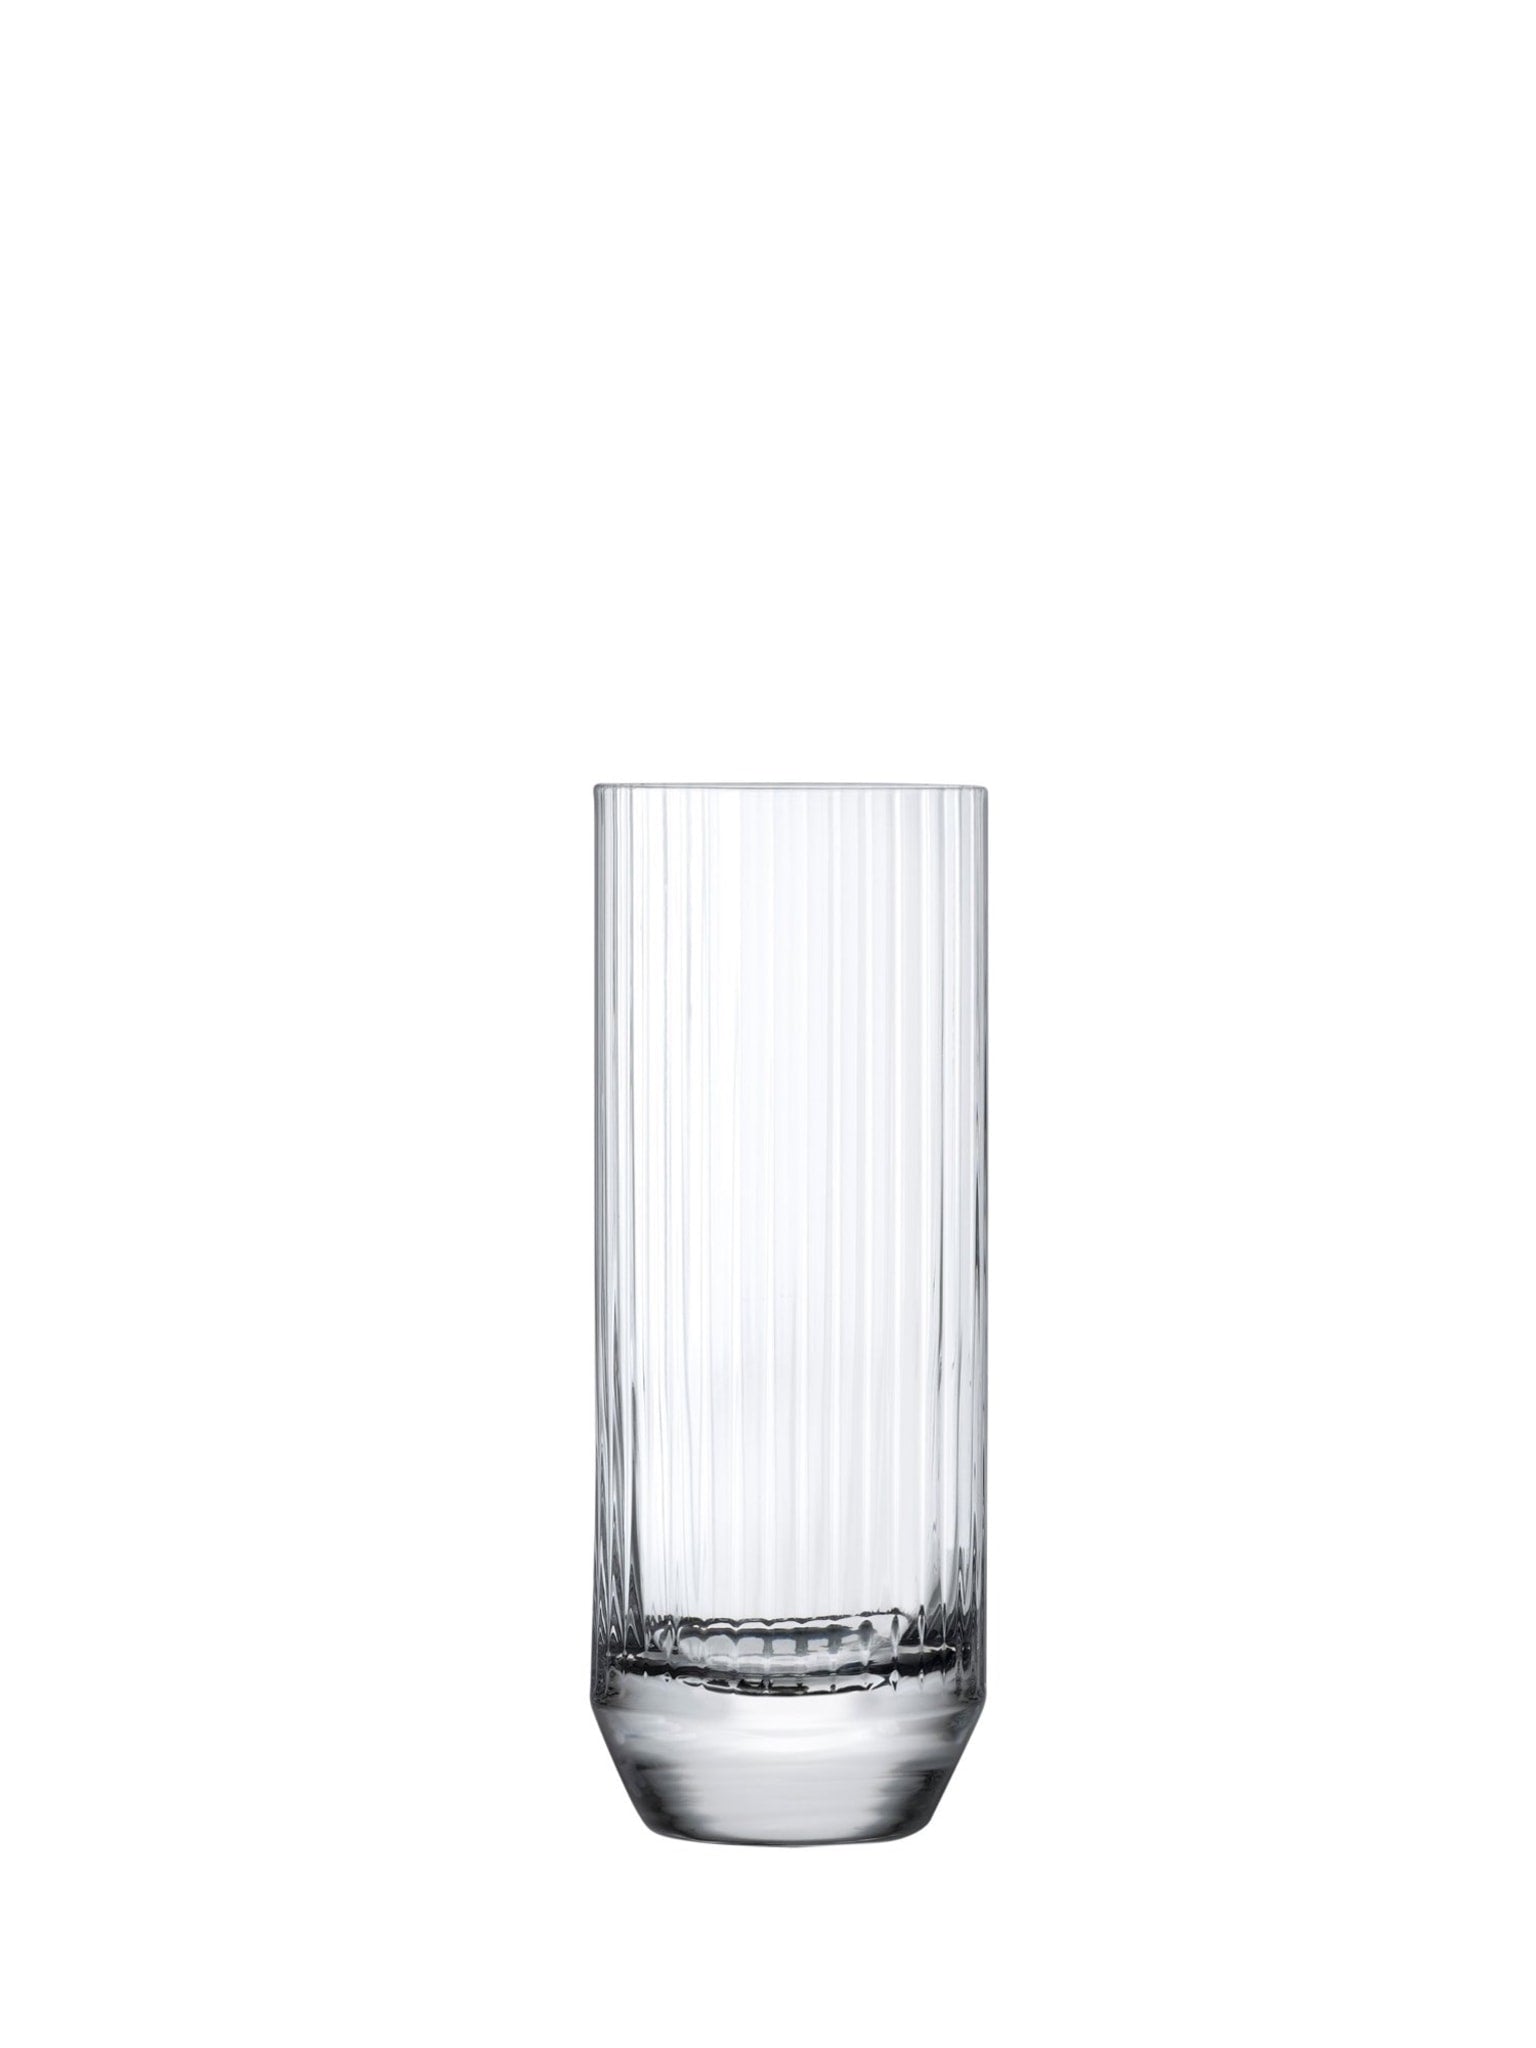 Oplev skønheden i det minimalistiske design med Nude Big Top glasset.